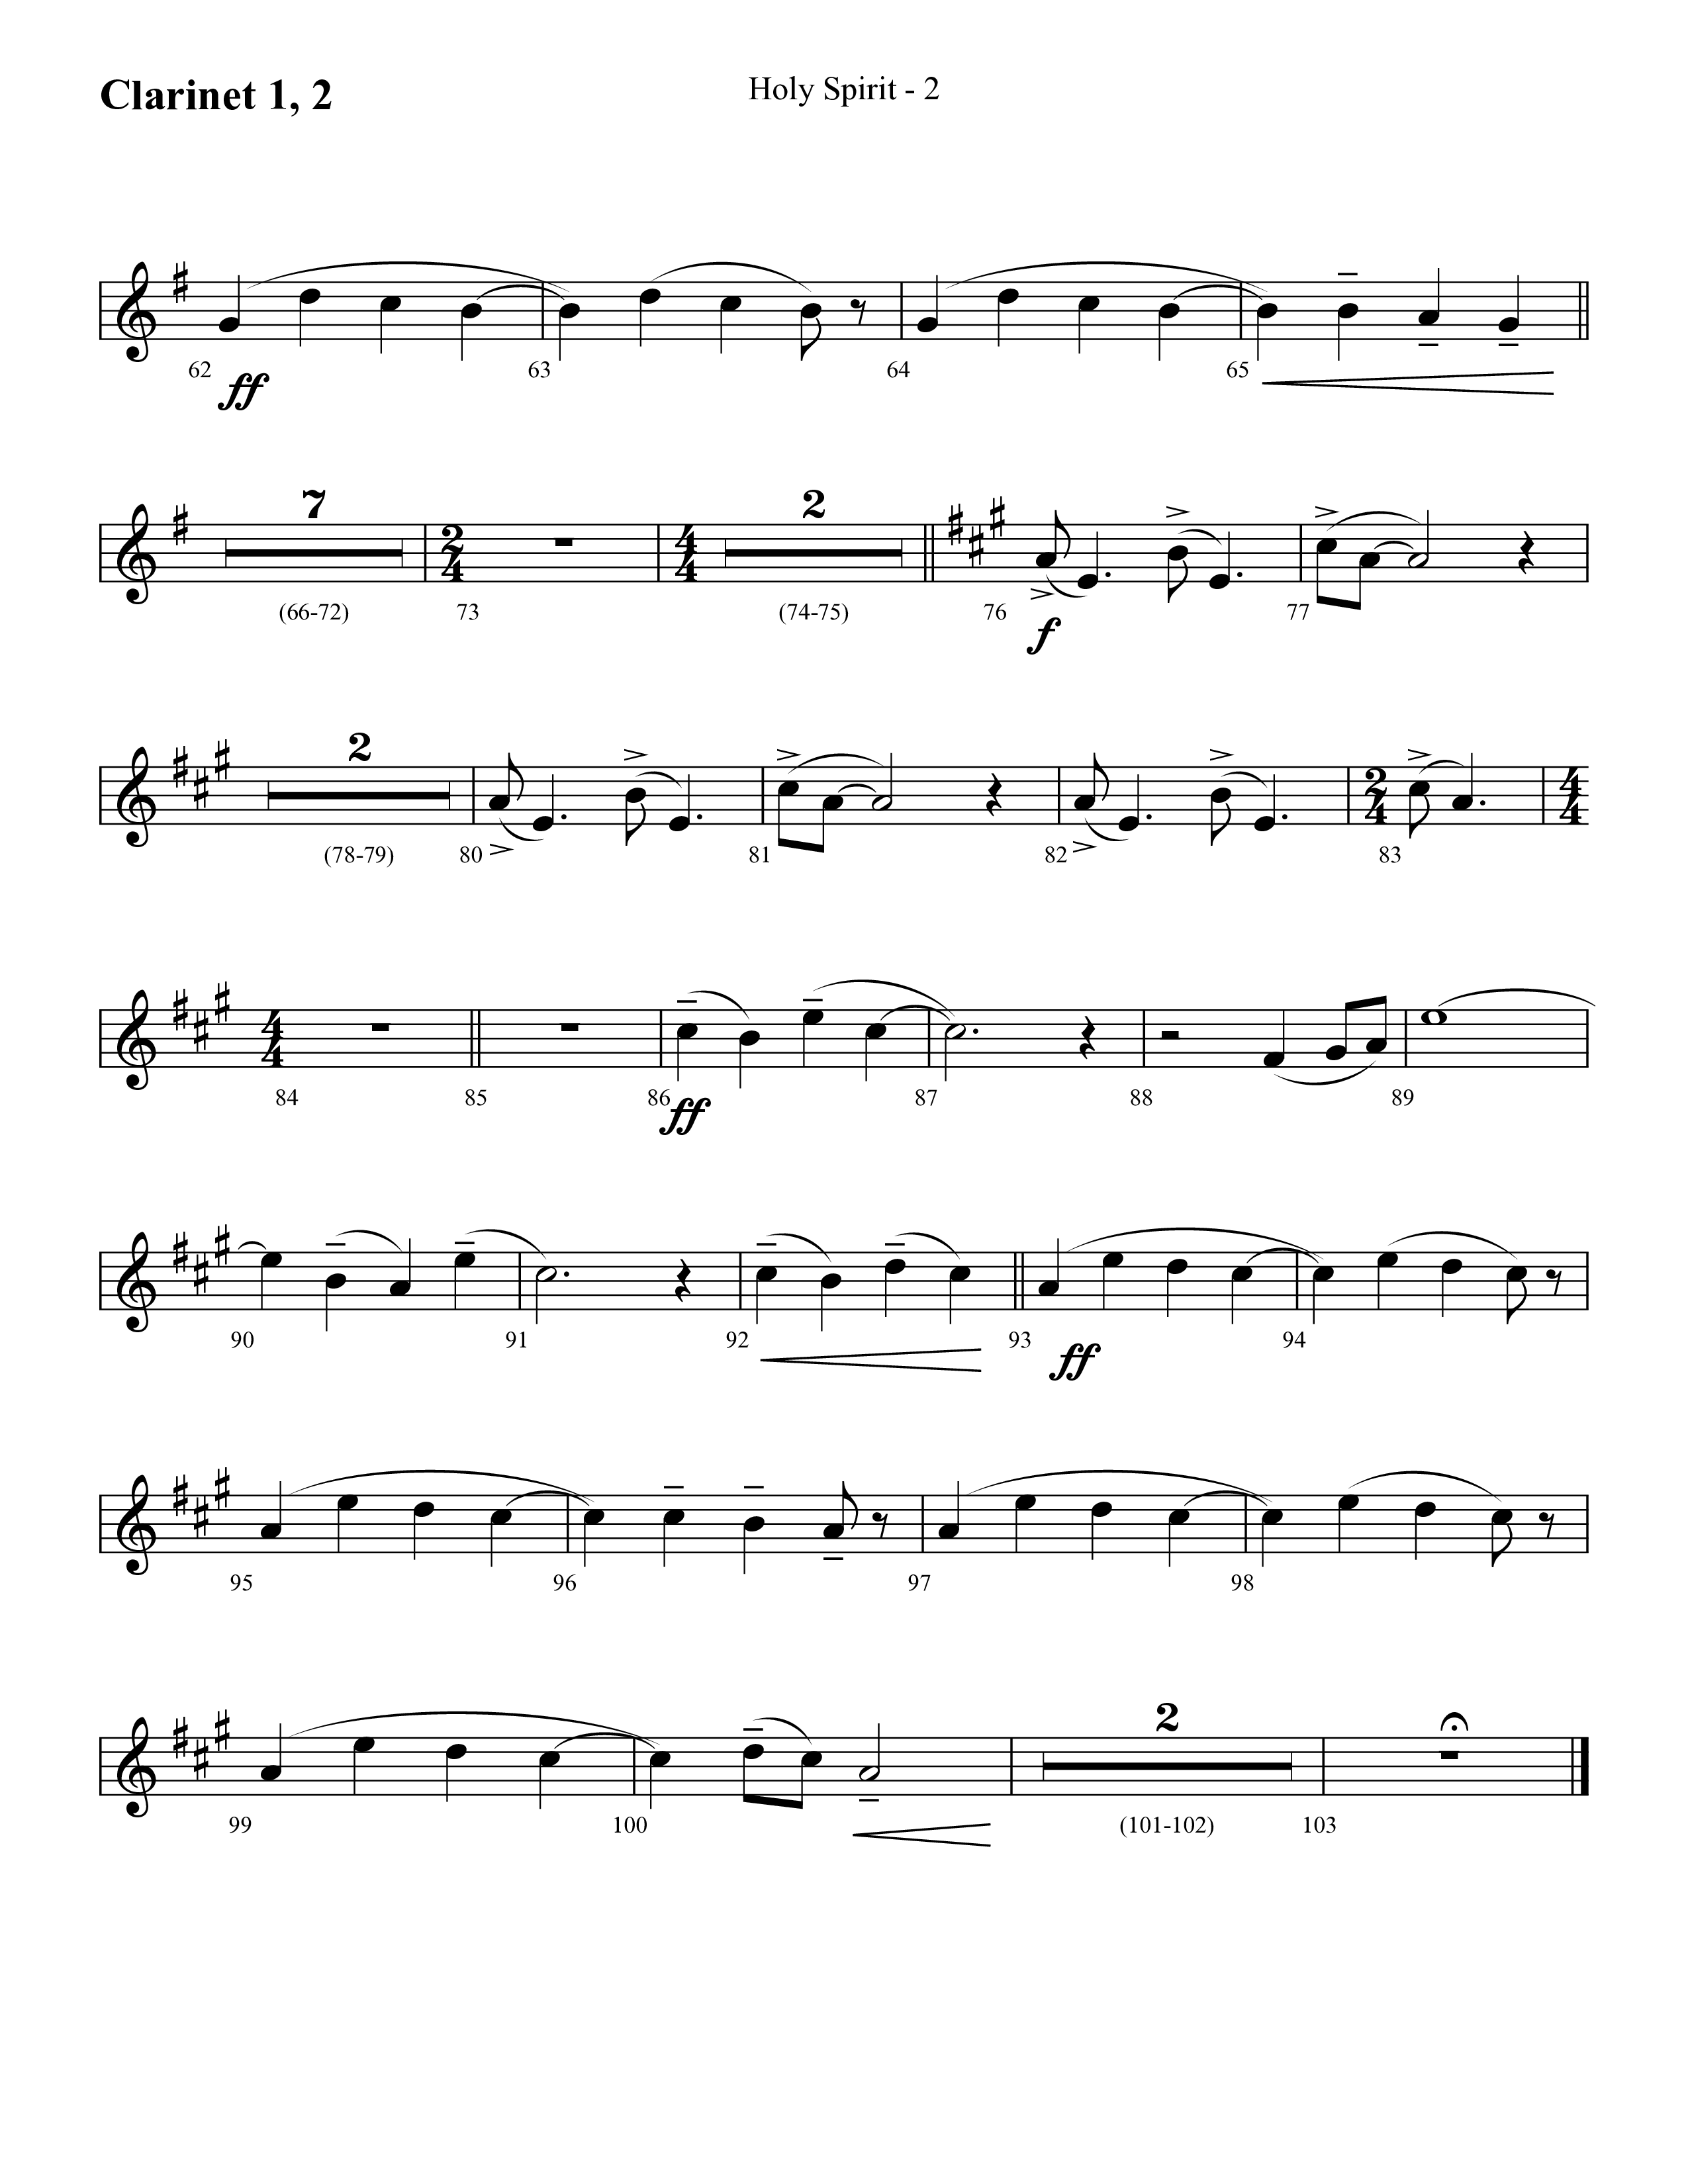 Holy Spirit  (Choral Anthem SATB) Clarinet 1/2 (Lifeway Choral / Arr. Cliff Duren)